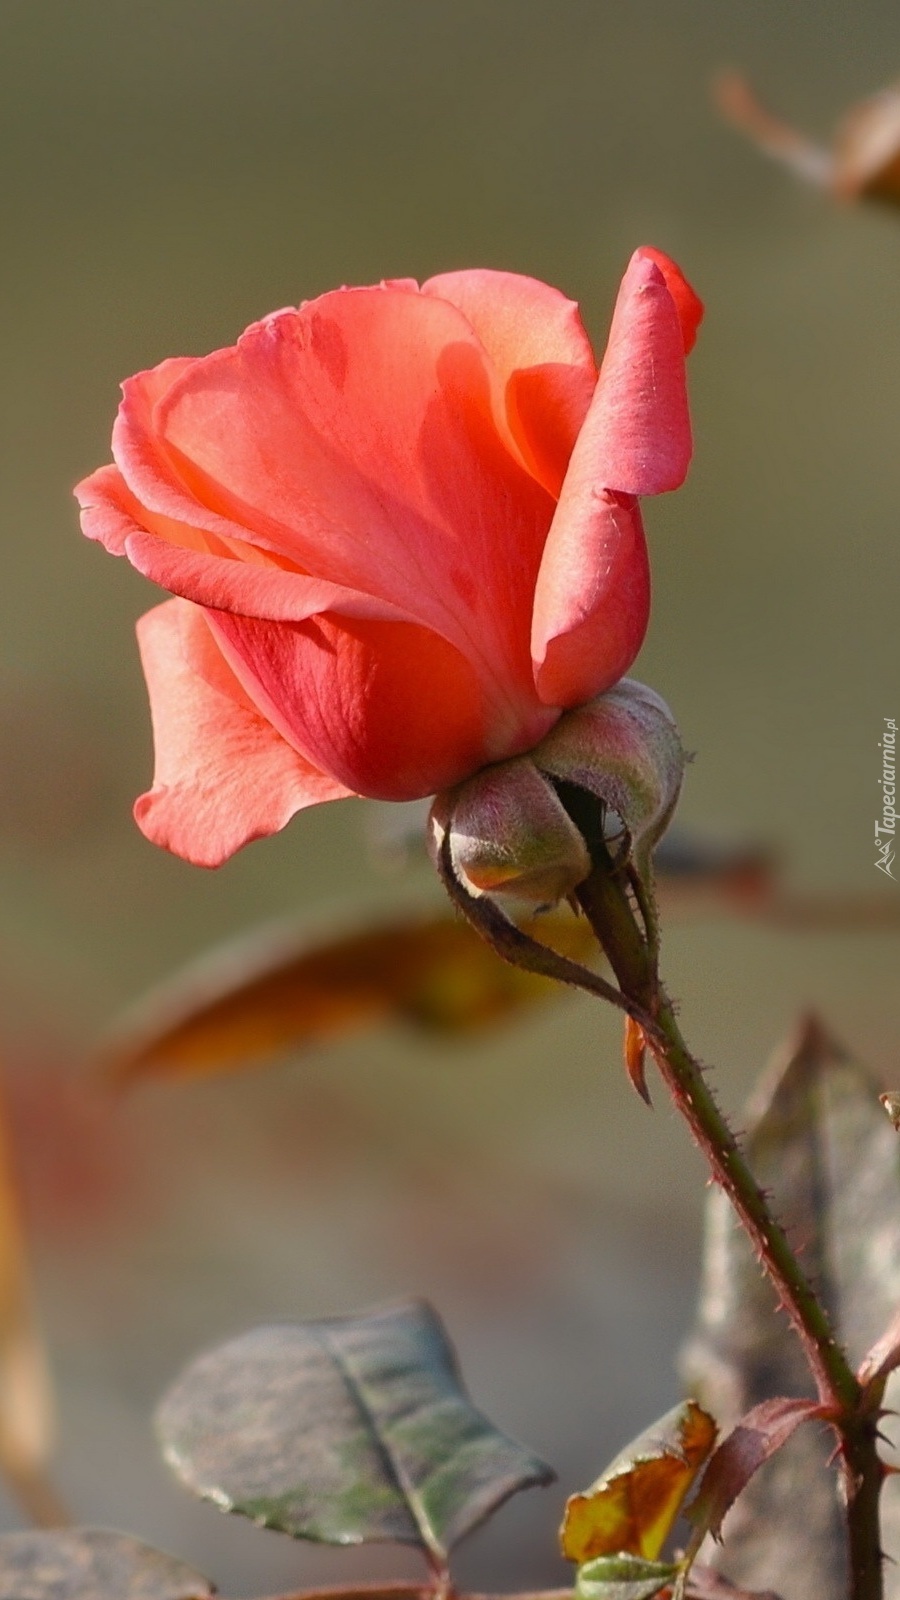 Samotna róża ogrodowa